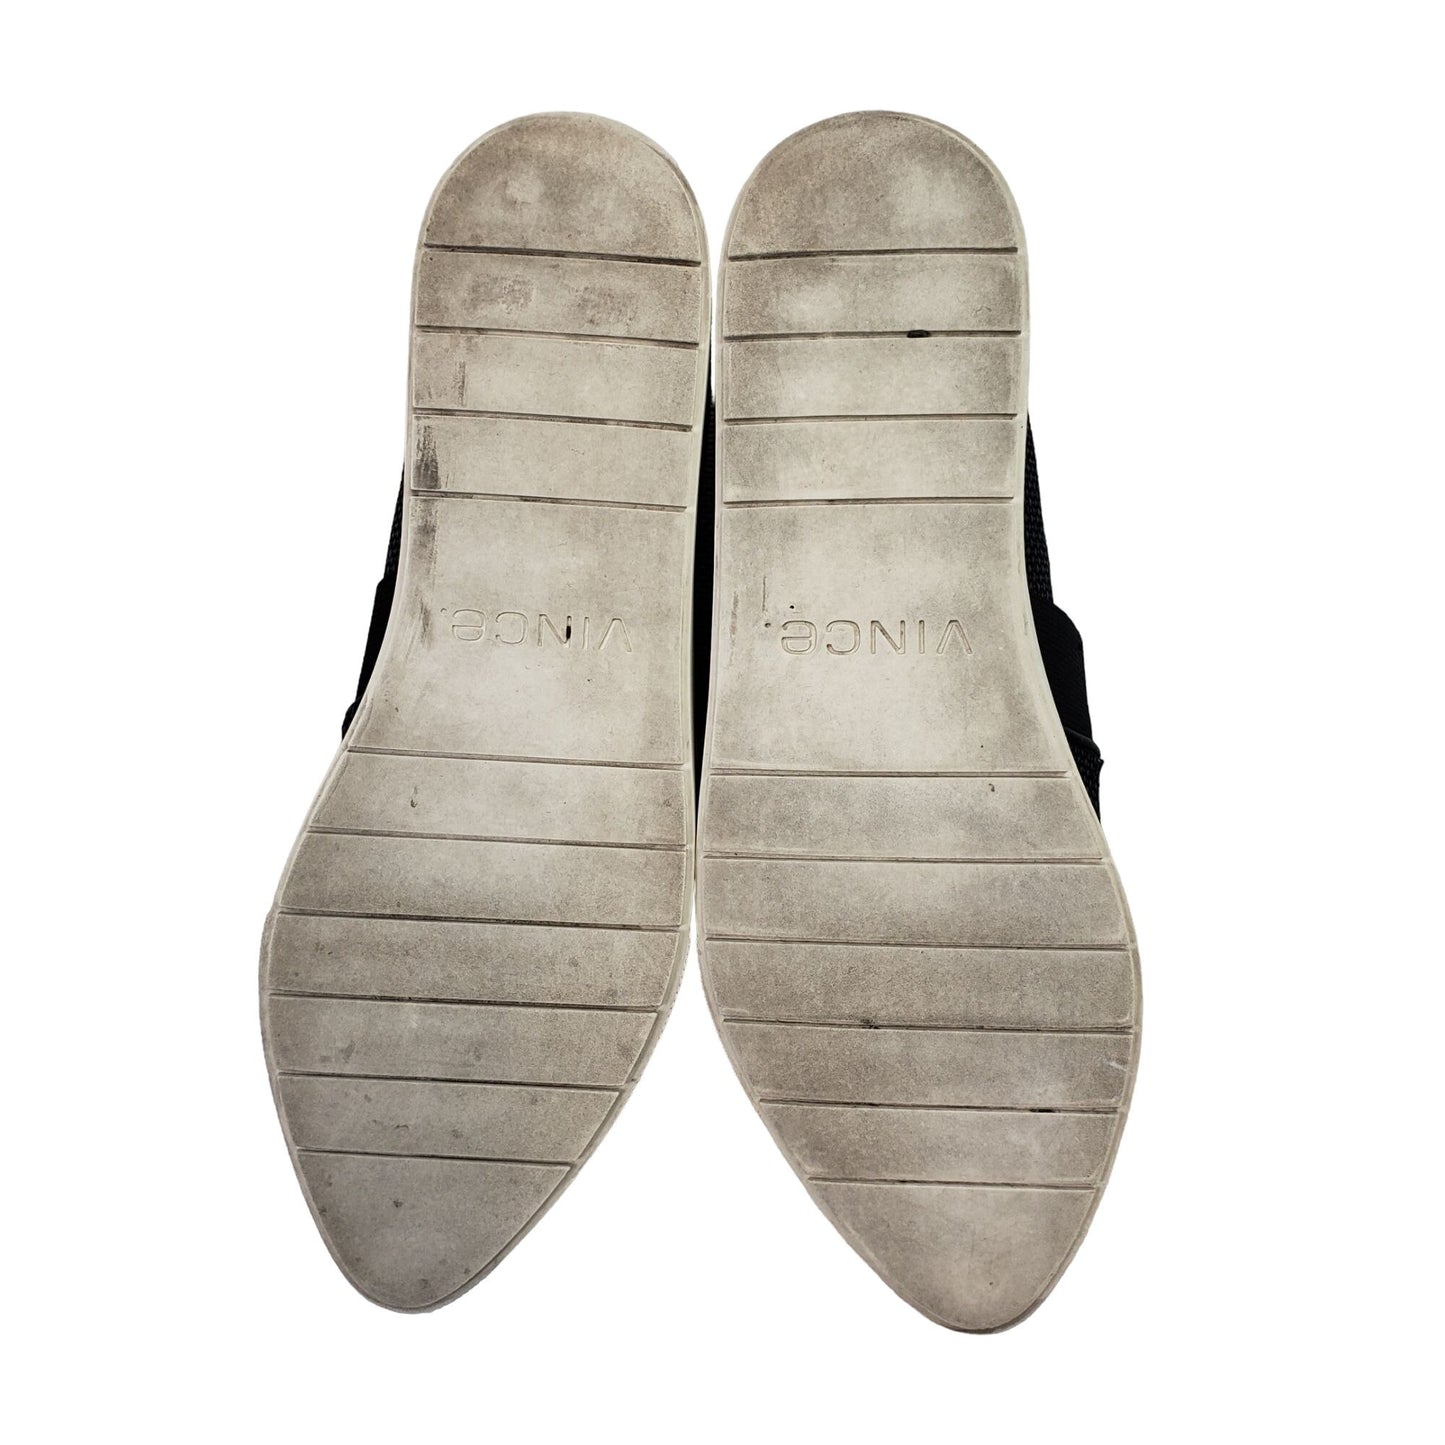 Vince Pierce Point-Toe Woven Slip-On Sneakers Size 6.5